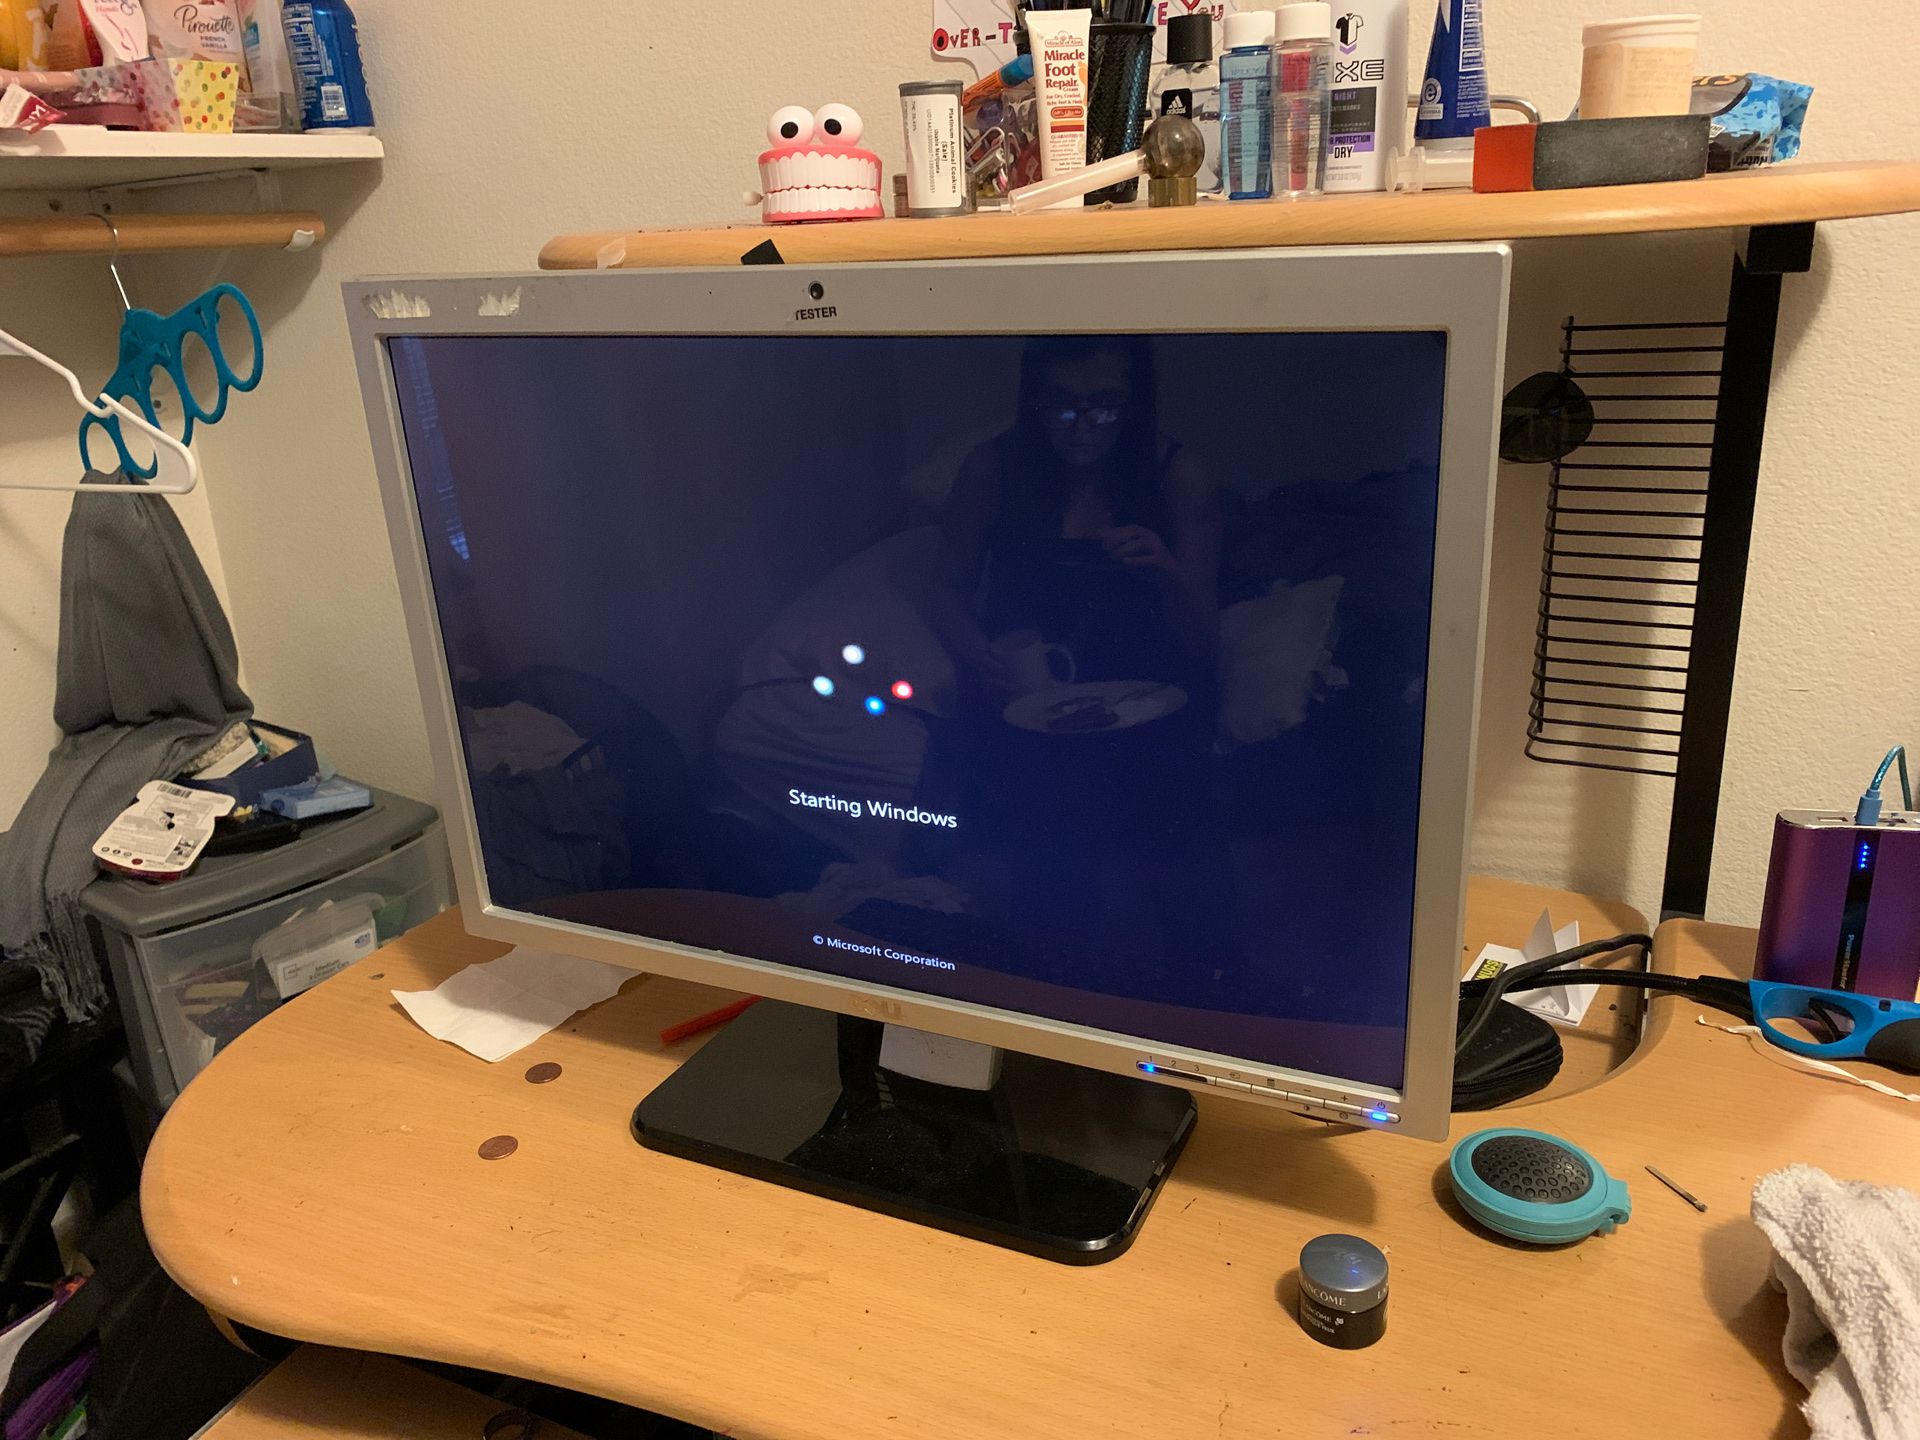 19x12” Dell computer monitor